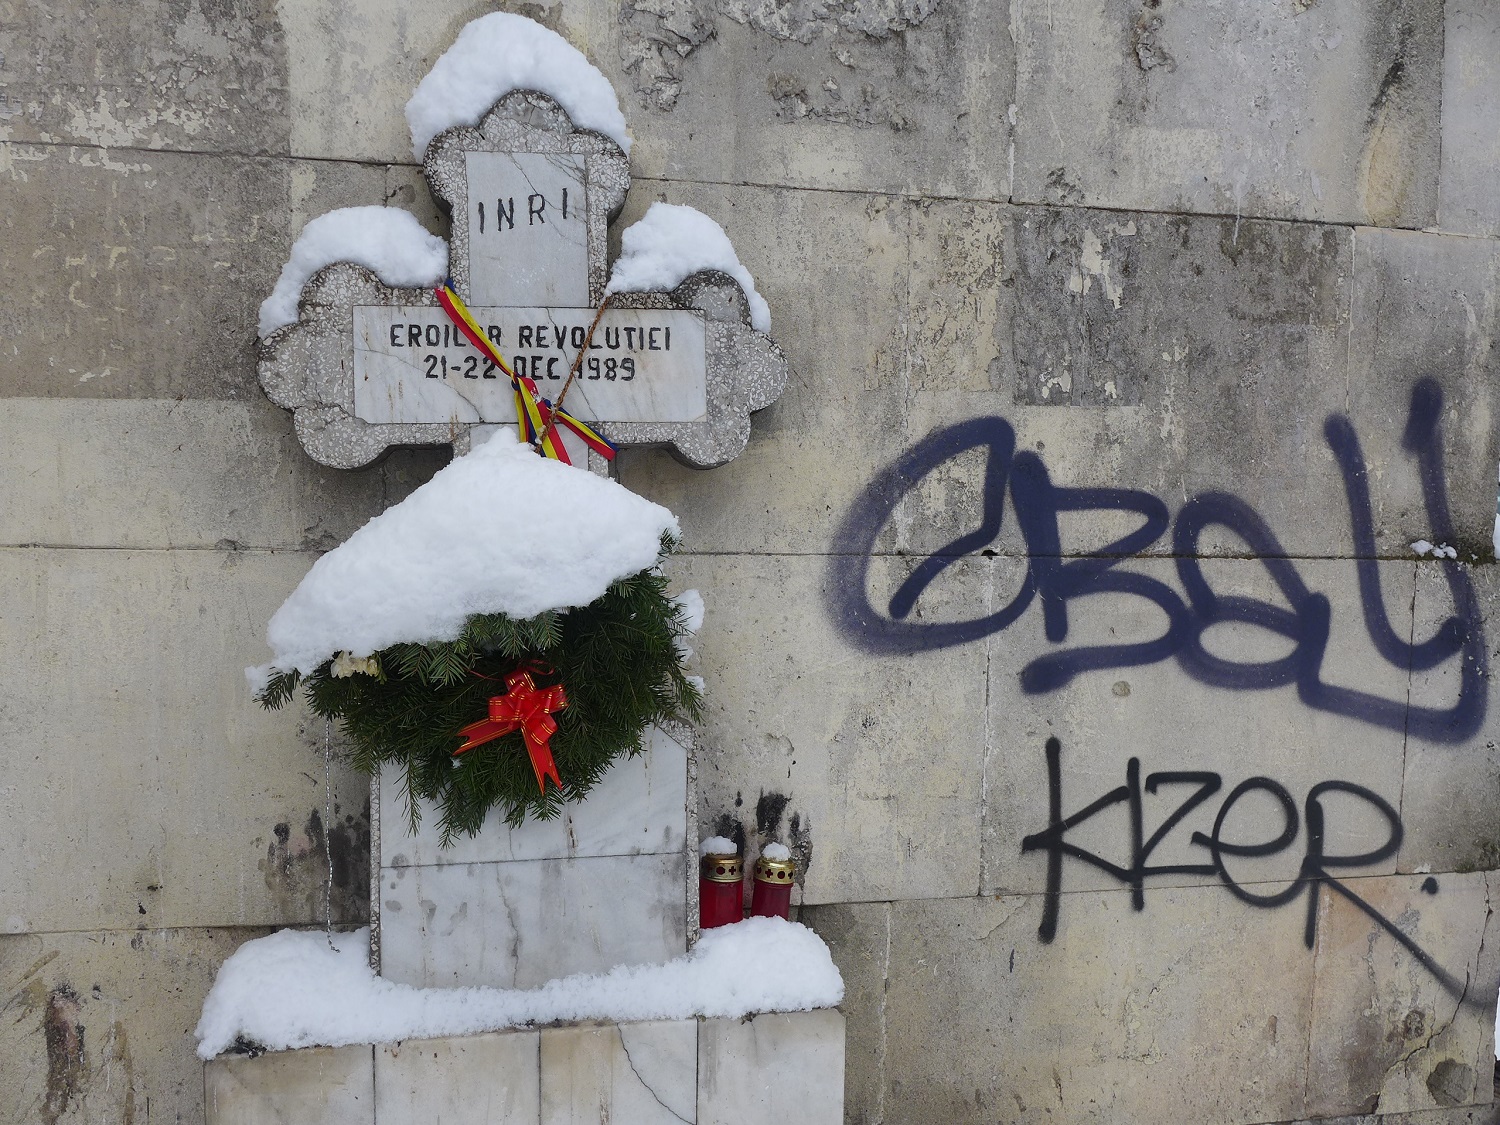 Cette croix a été installée un an après la révolution, en 1990. Elle est dédiée aux « héros de la révolution », tombés les 21 et 22 décembre 1989.